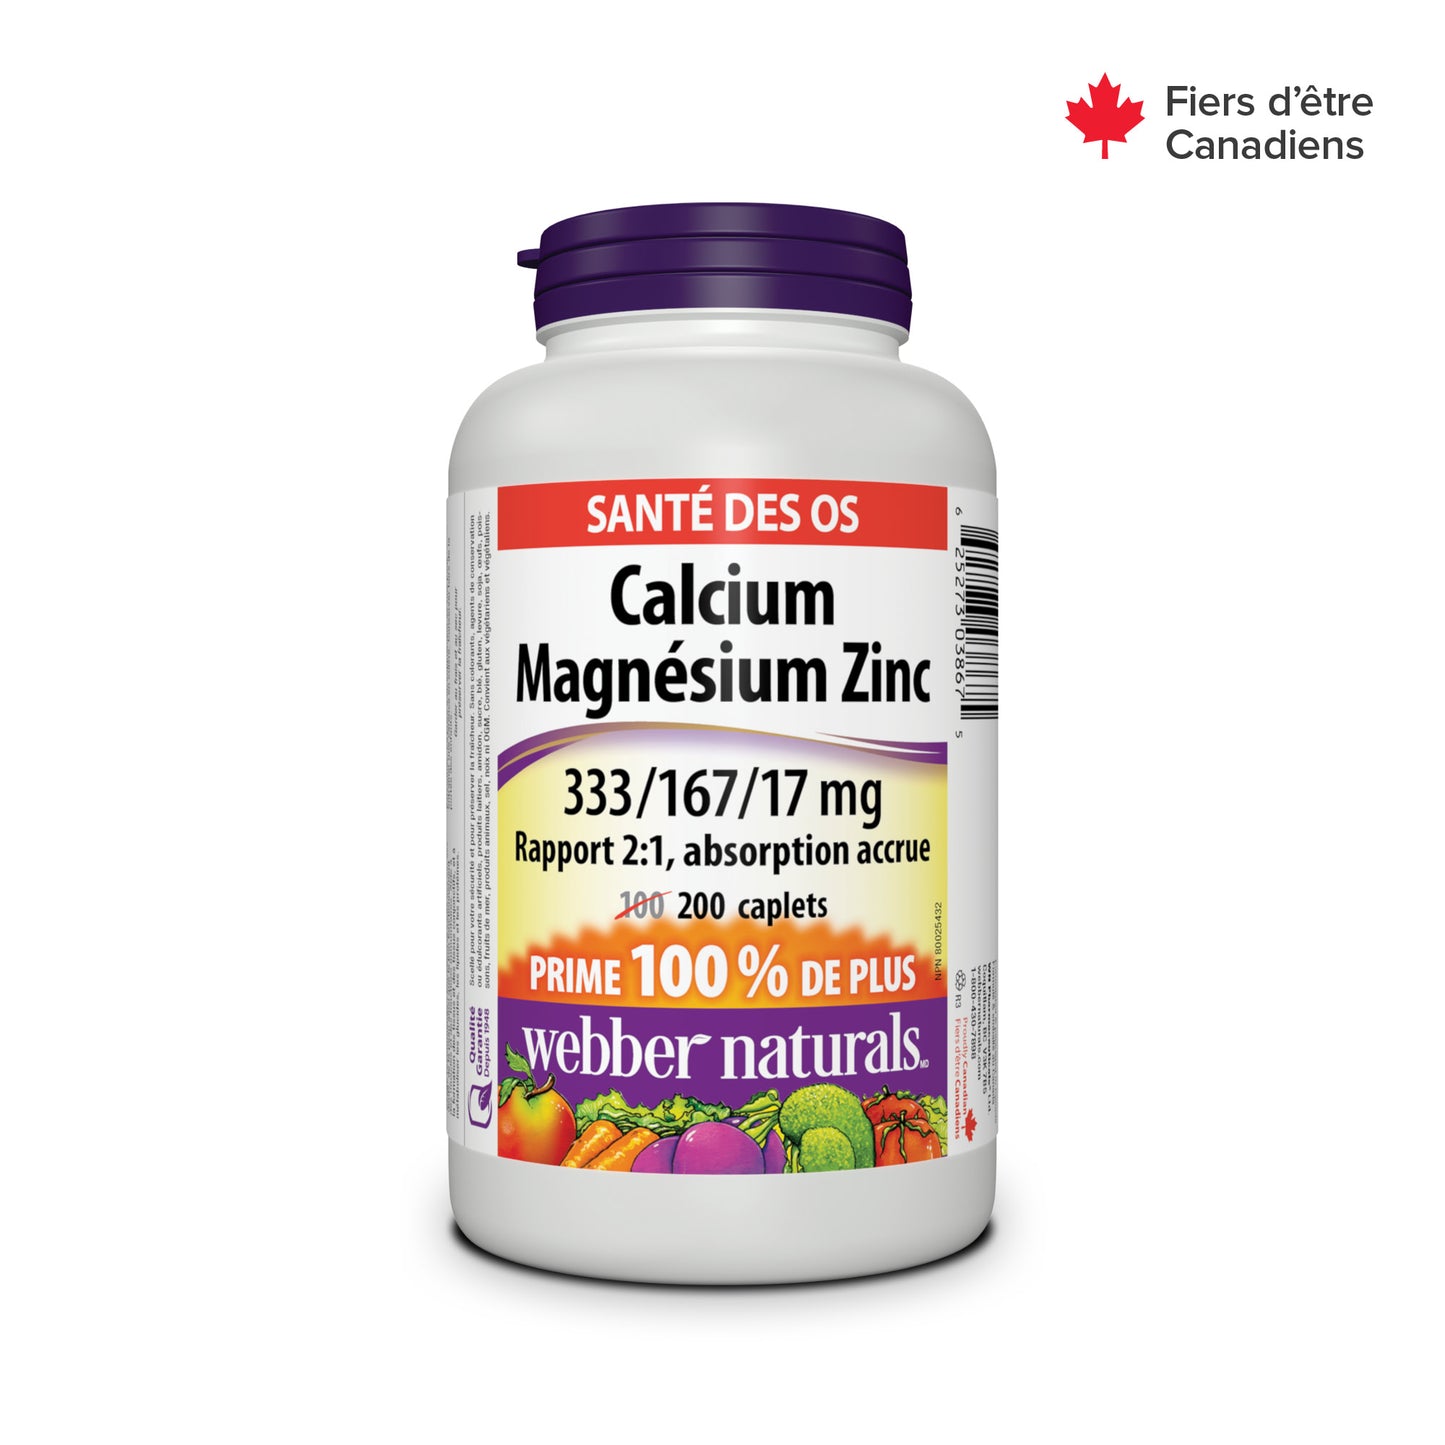 Calcium Magnesium Zinc 2:1 Ratio, Enhanced Absorption 333/167/17 mg for Webber Naturals|v|hi-res|WN3867